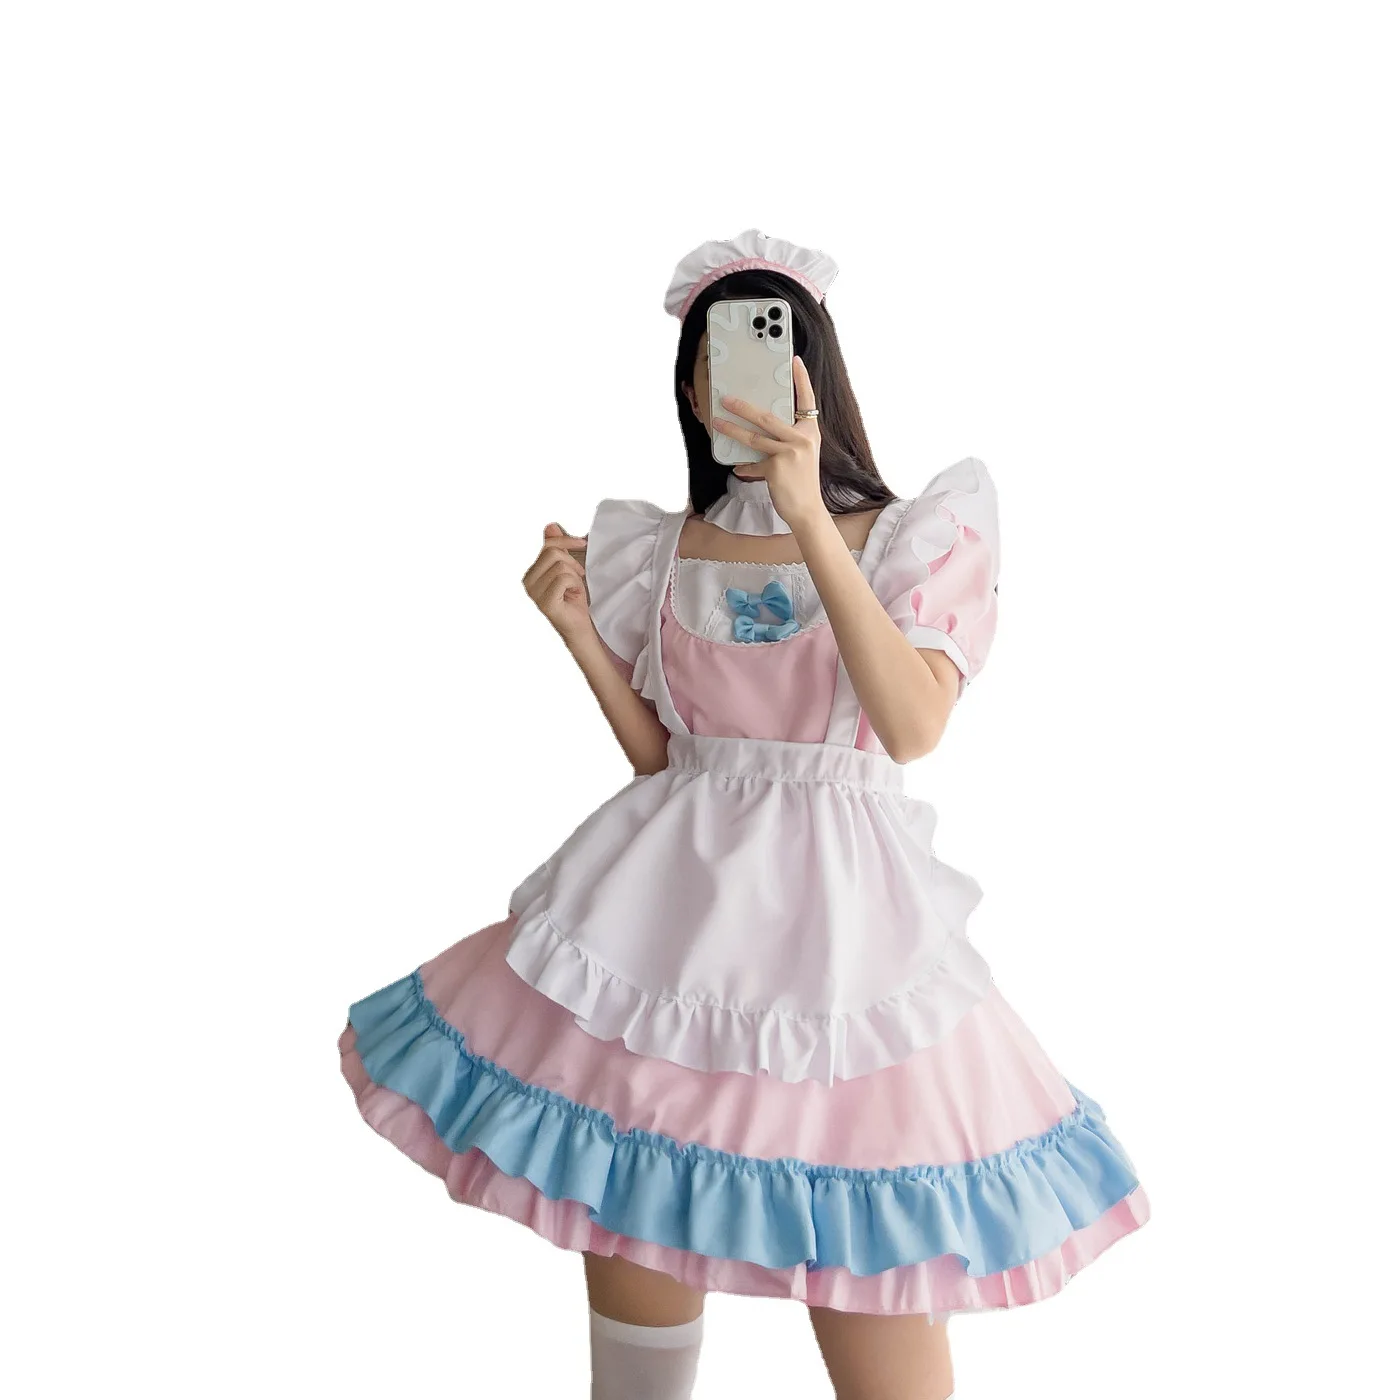 

Женское платье в стиле "Лолита", костюм японской горничной из аниме для косплея, розовый костюм с оборками и повязкой на голову, размеры S-5XL